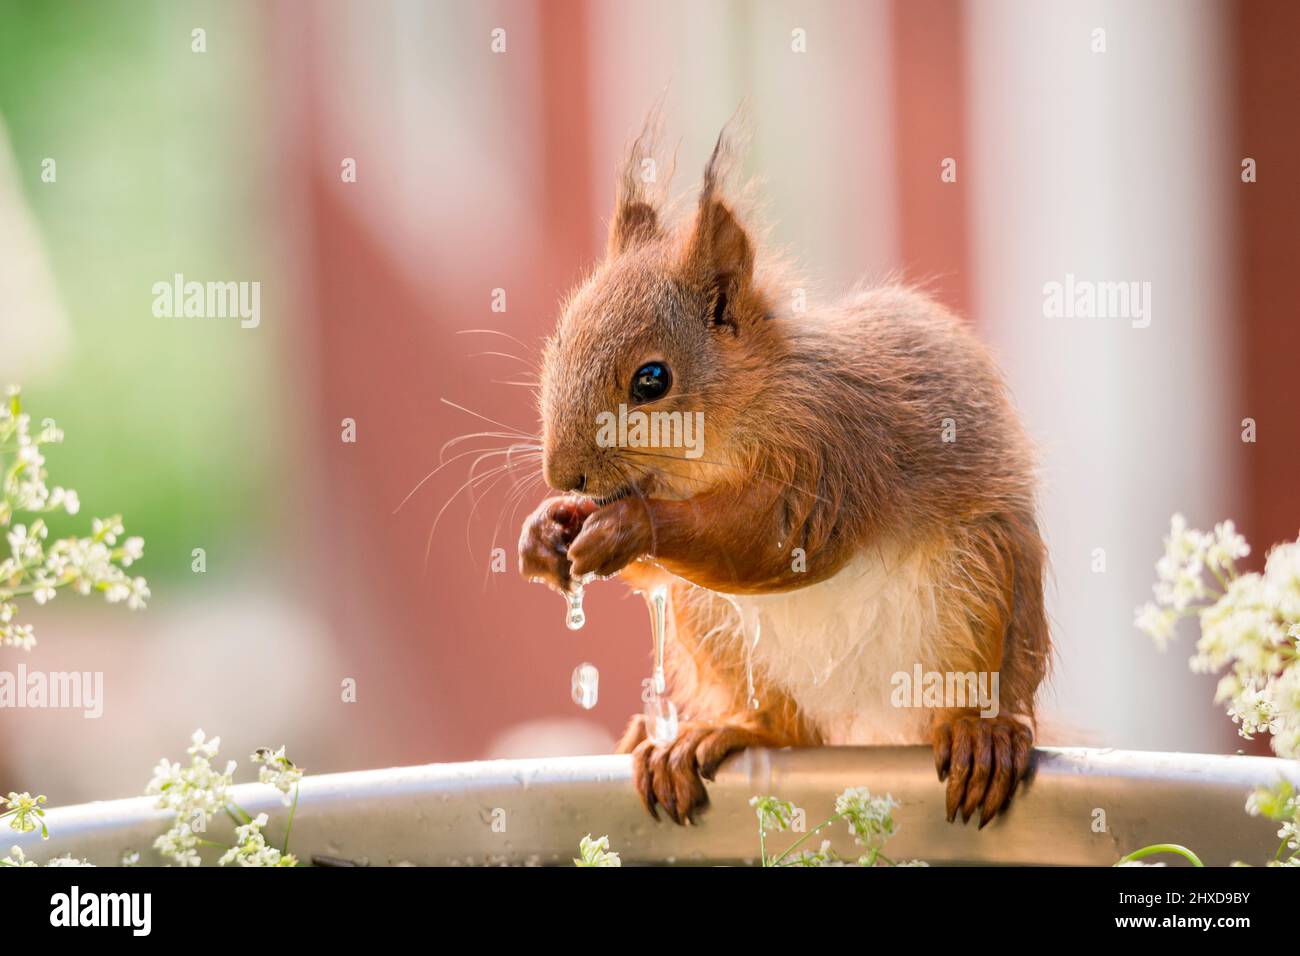 écureuil debout sur le bord d'une baignoire avec de l'eau qui coule des jambes avant Banque D'Images